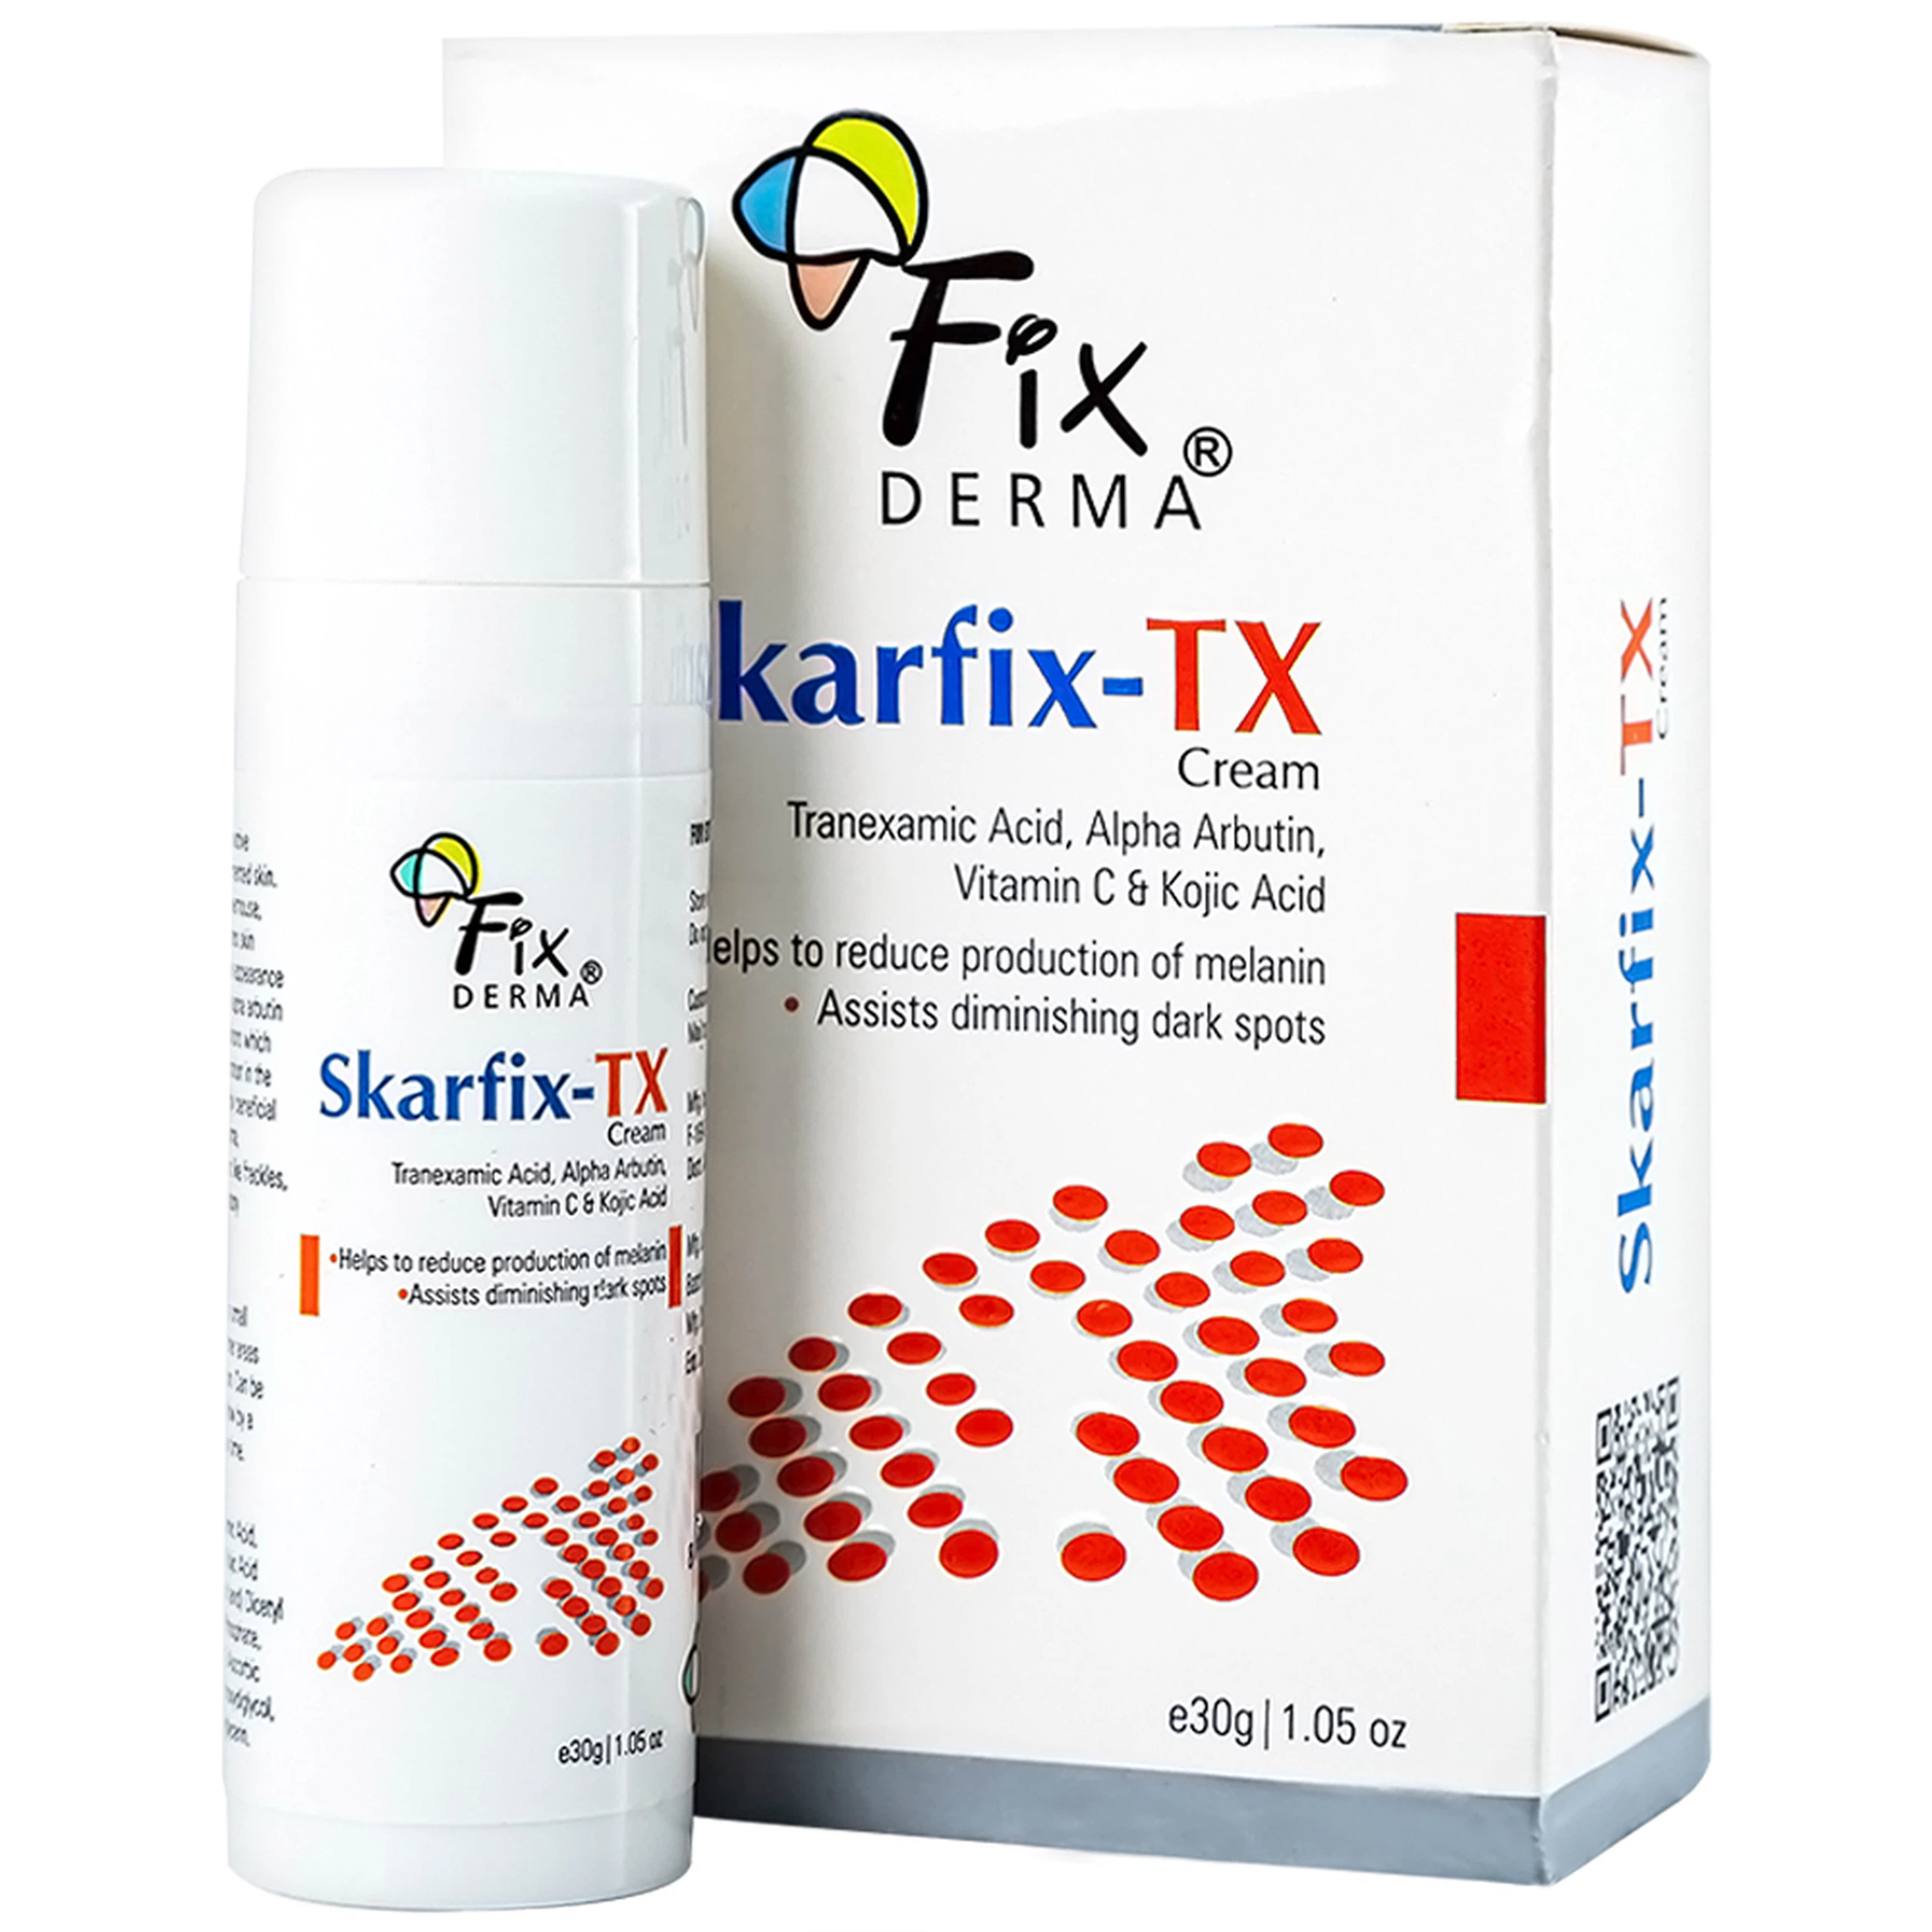 Kem Fixderma Skarfix-TX Cream hỗ trợ làm mờ vết thâm, đốm đen, nám (30g)